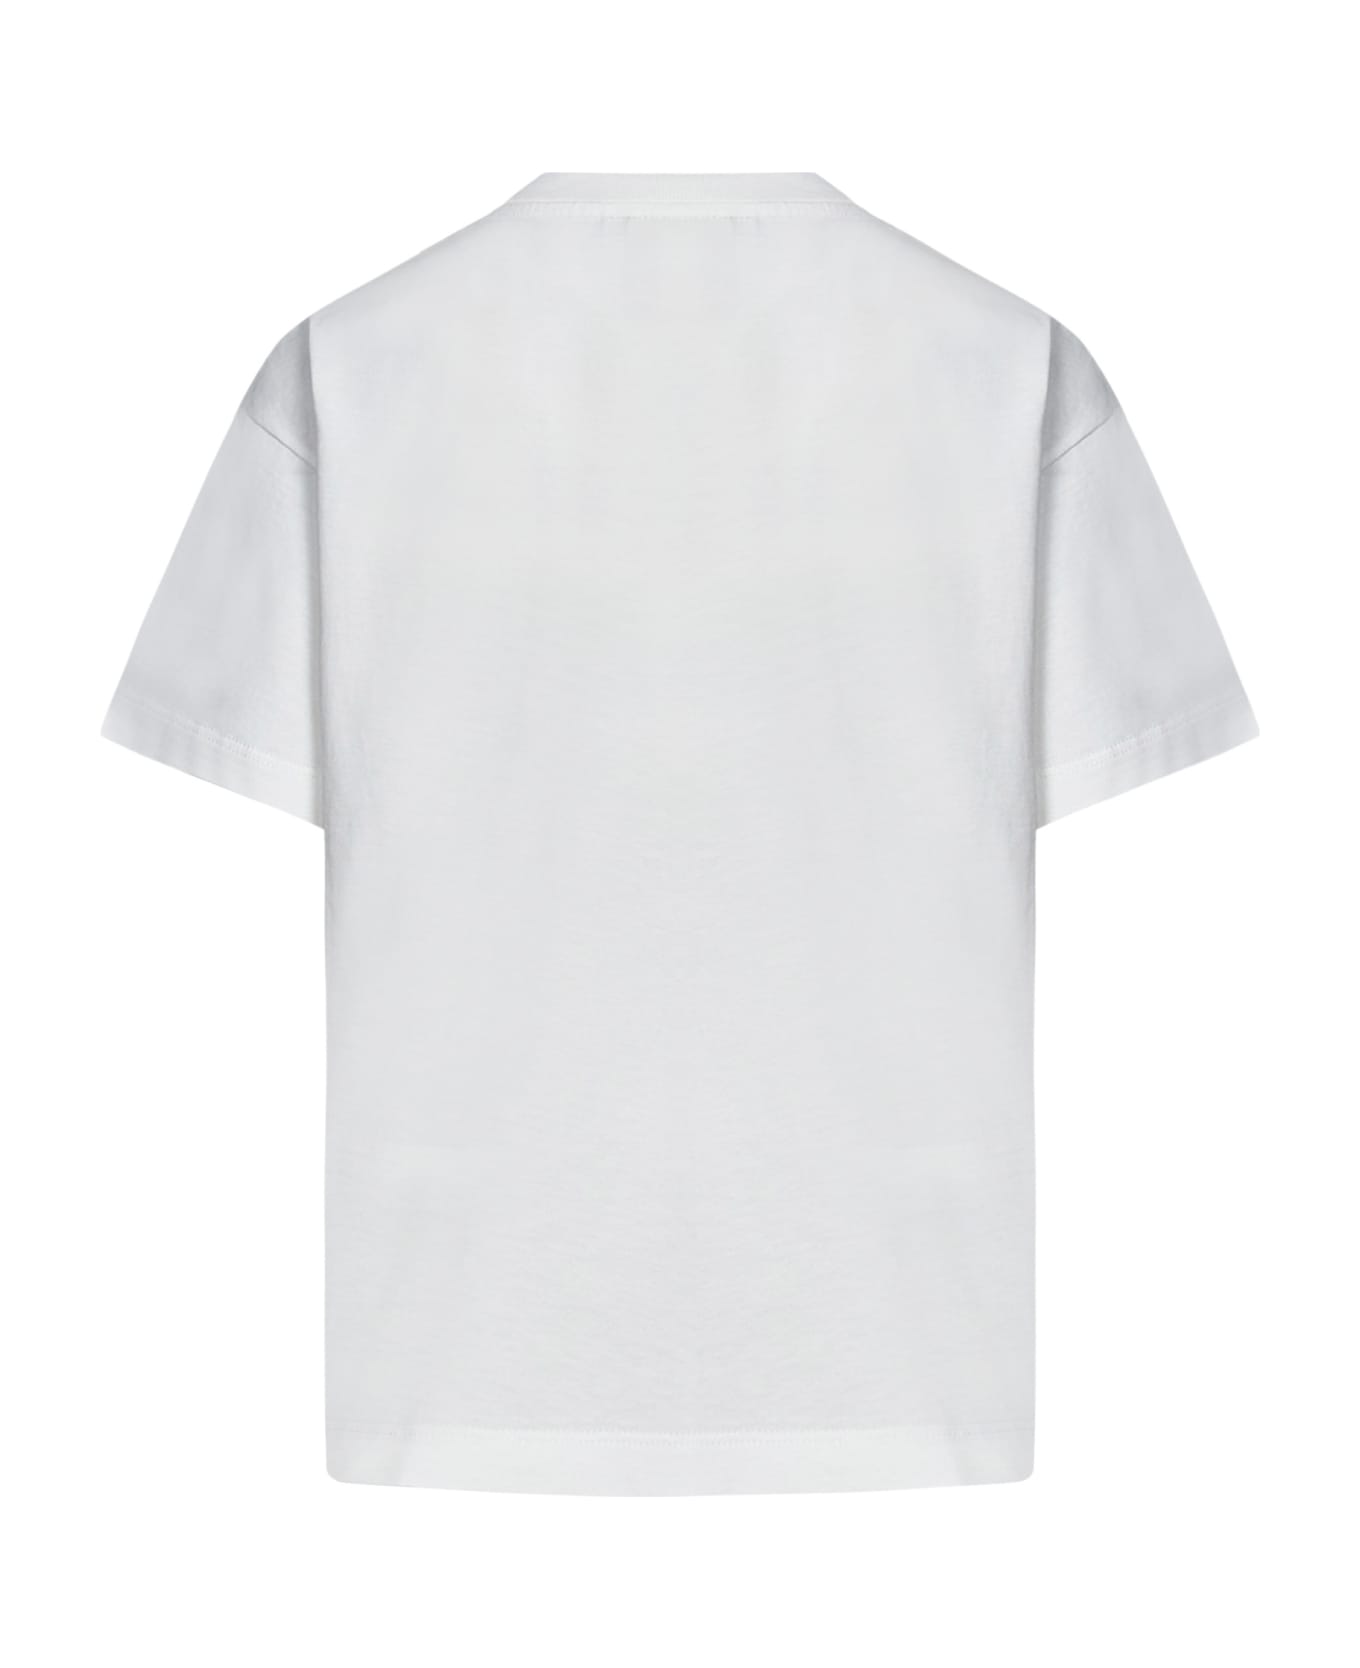 Fendi T-shirt - White Tシャツ＆ポロシャツ